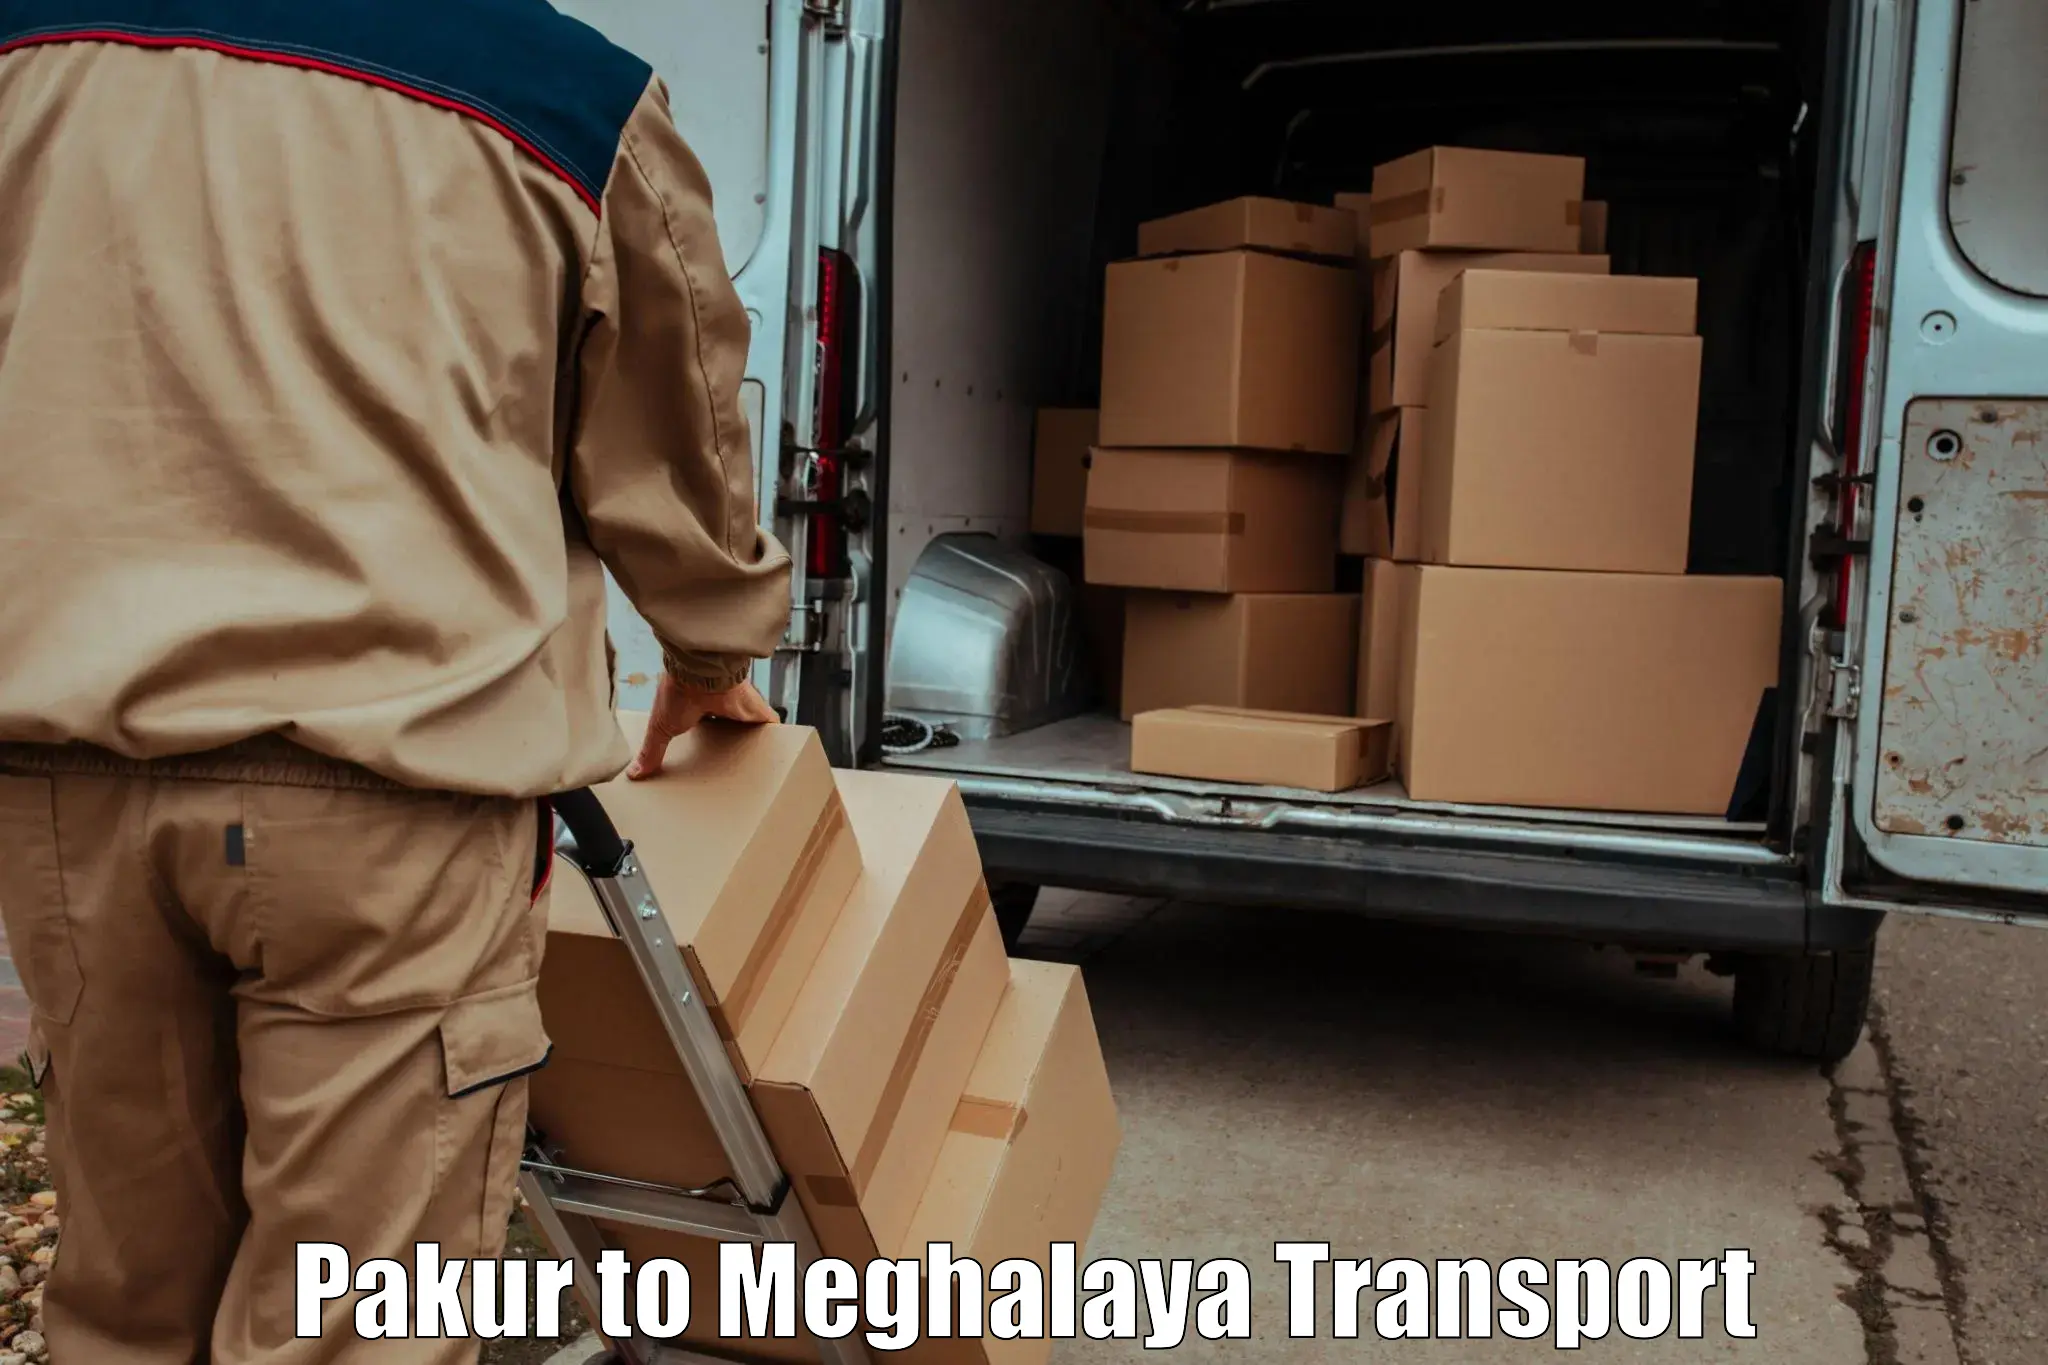 Shipping partner Pakur to Meghalaya